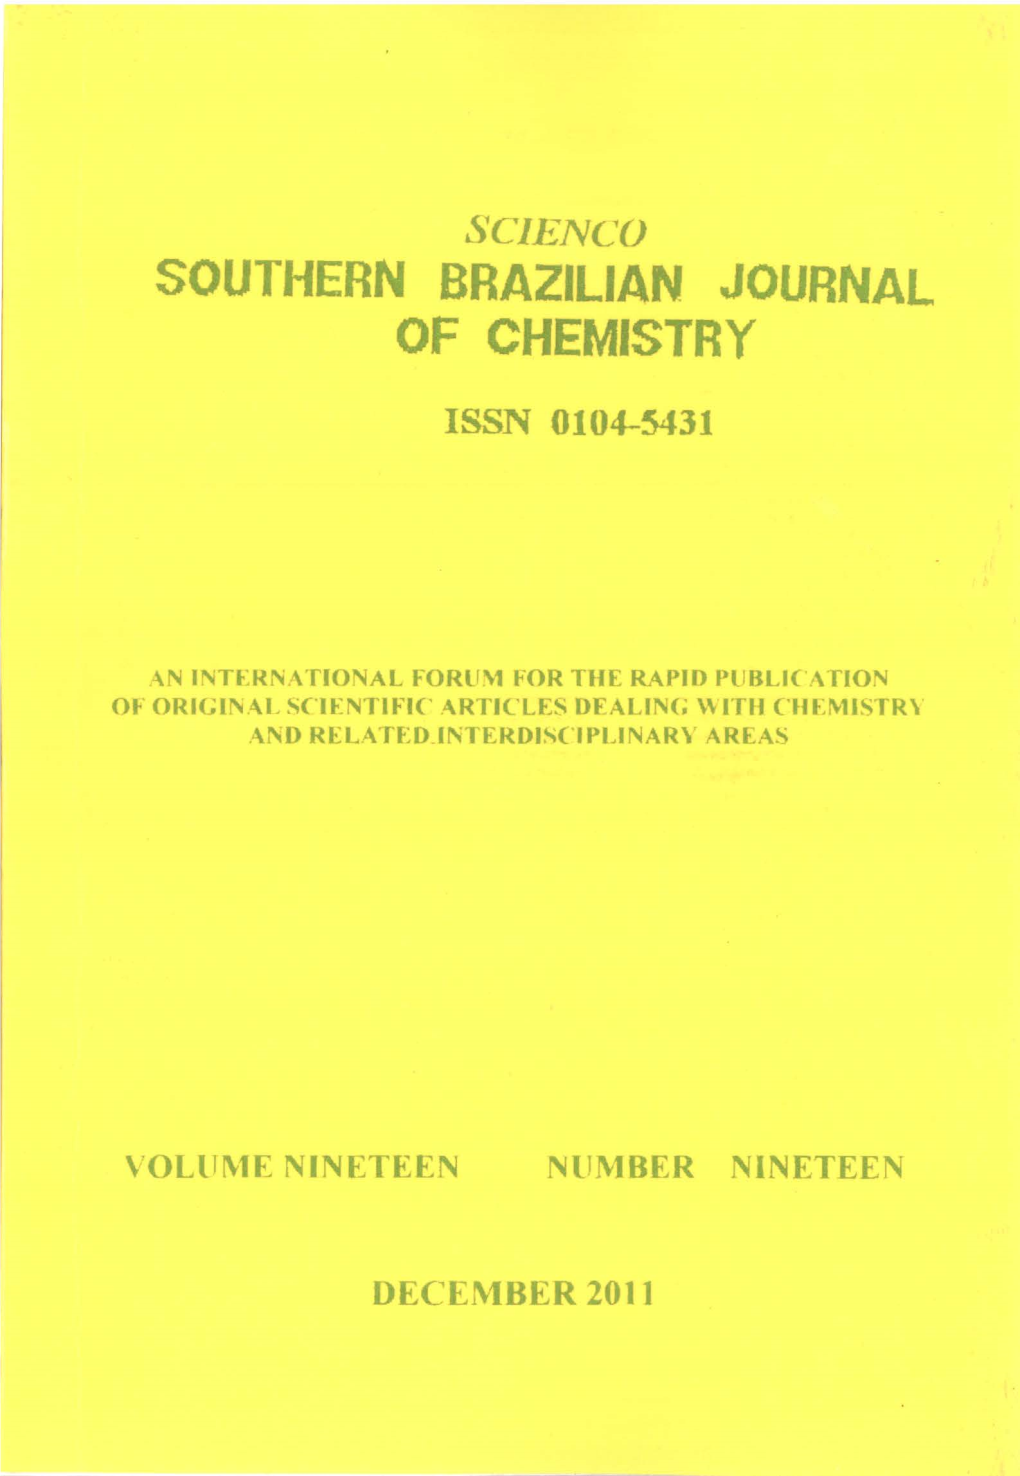 Southern Brazilian Journal of Chemistry